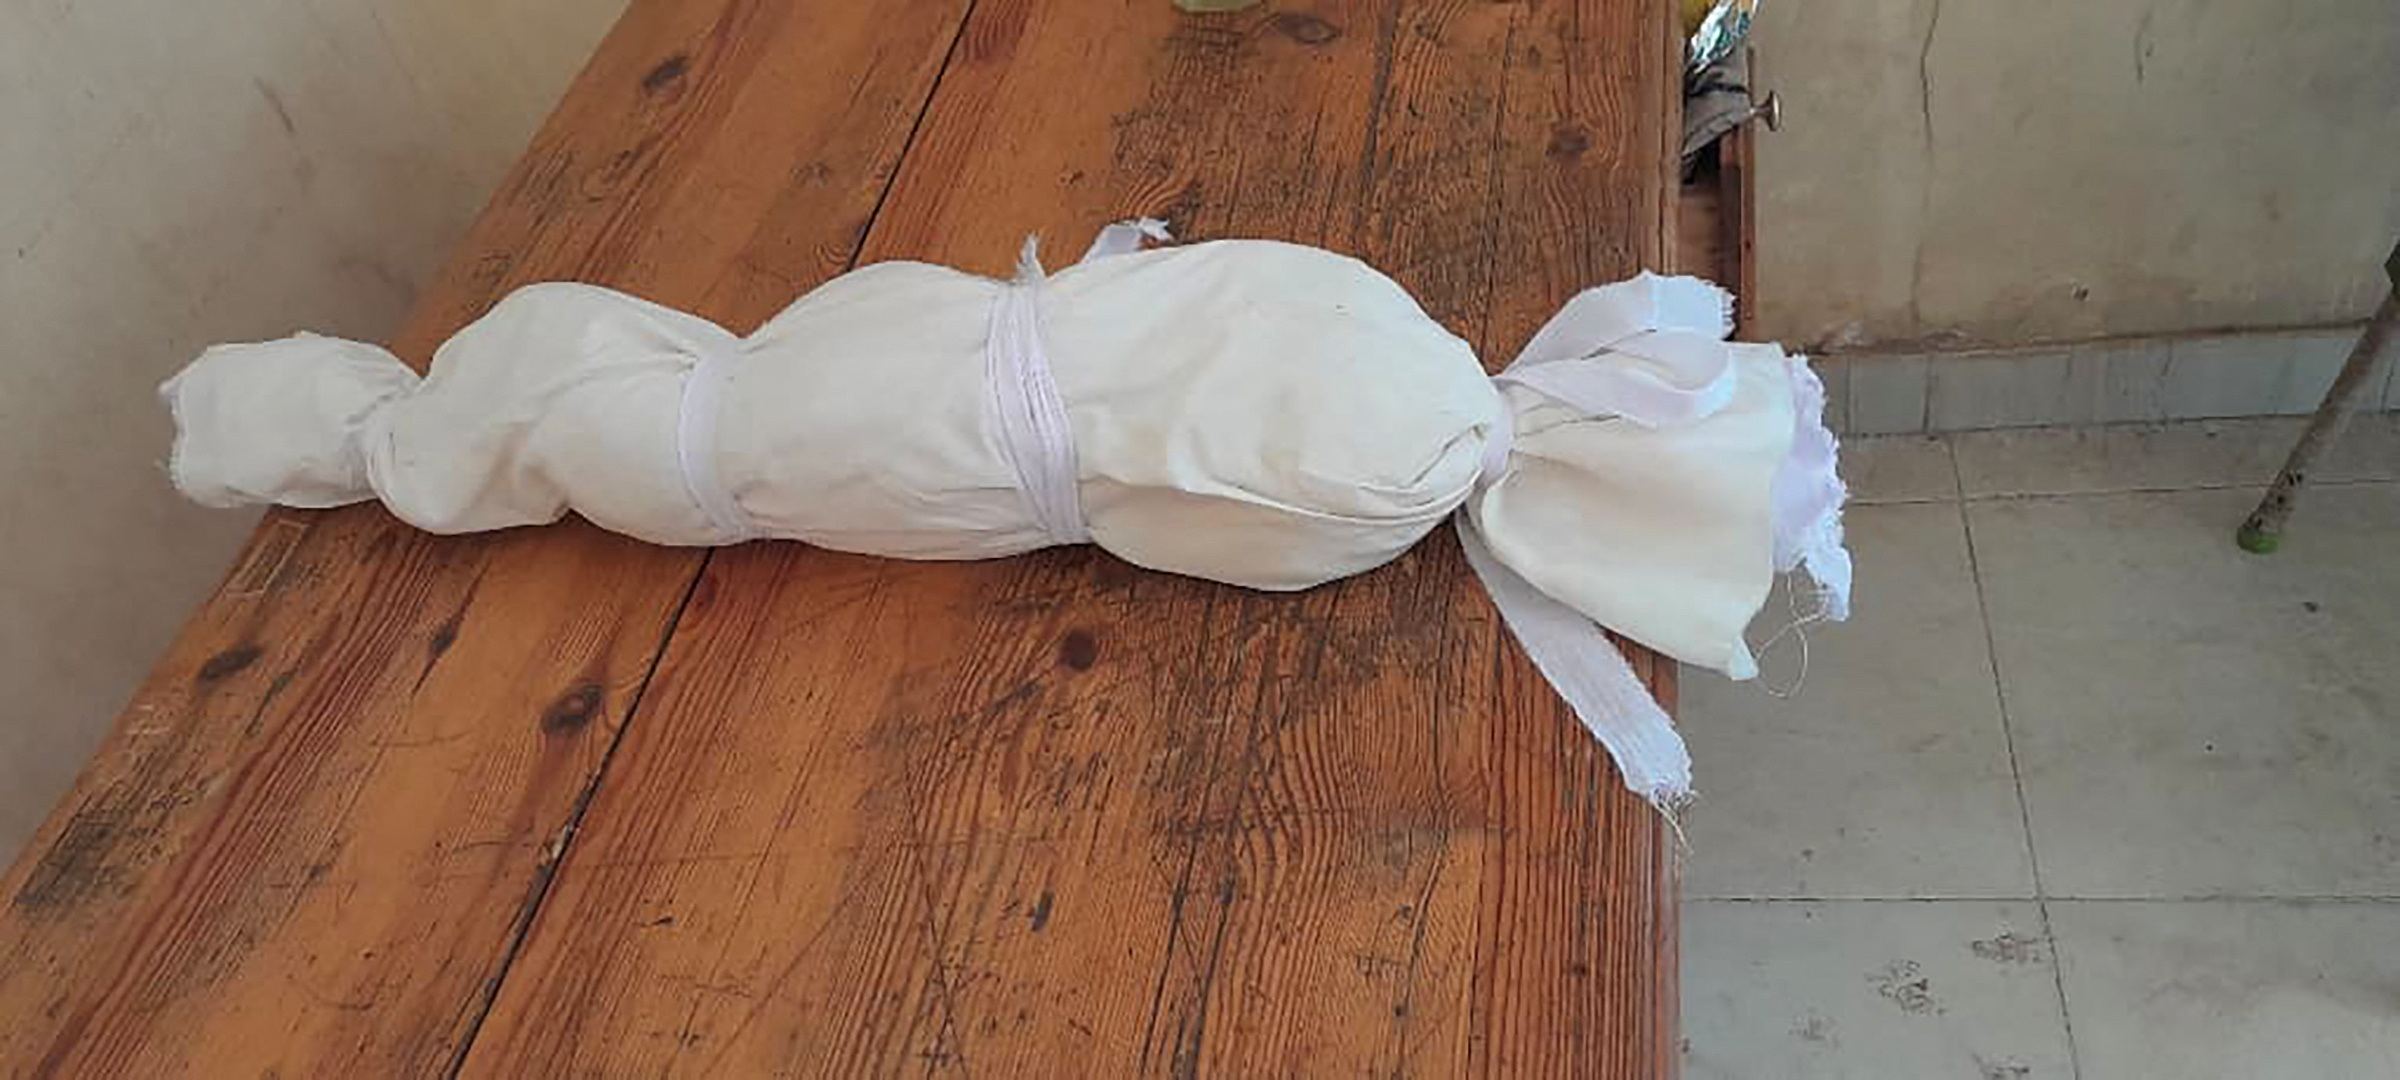 El cuerpo de un bebé yace envuelto en un material blanco después de su muerte en un orfanato en Jartum (Heba Abdullah/Folleto vía REUTERS)